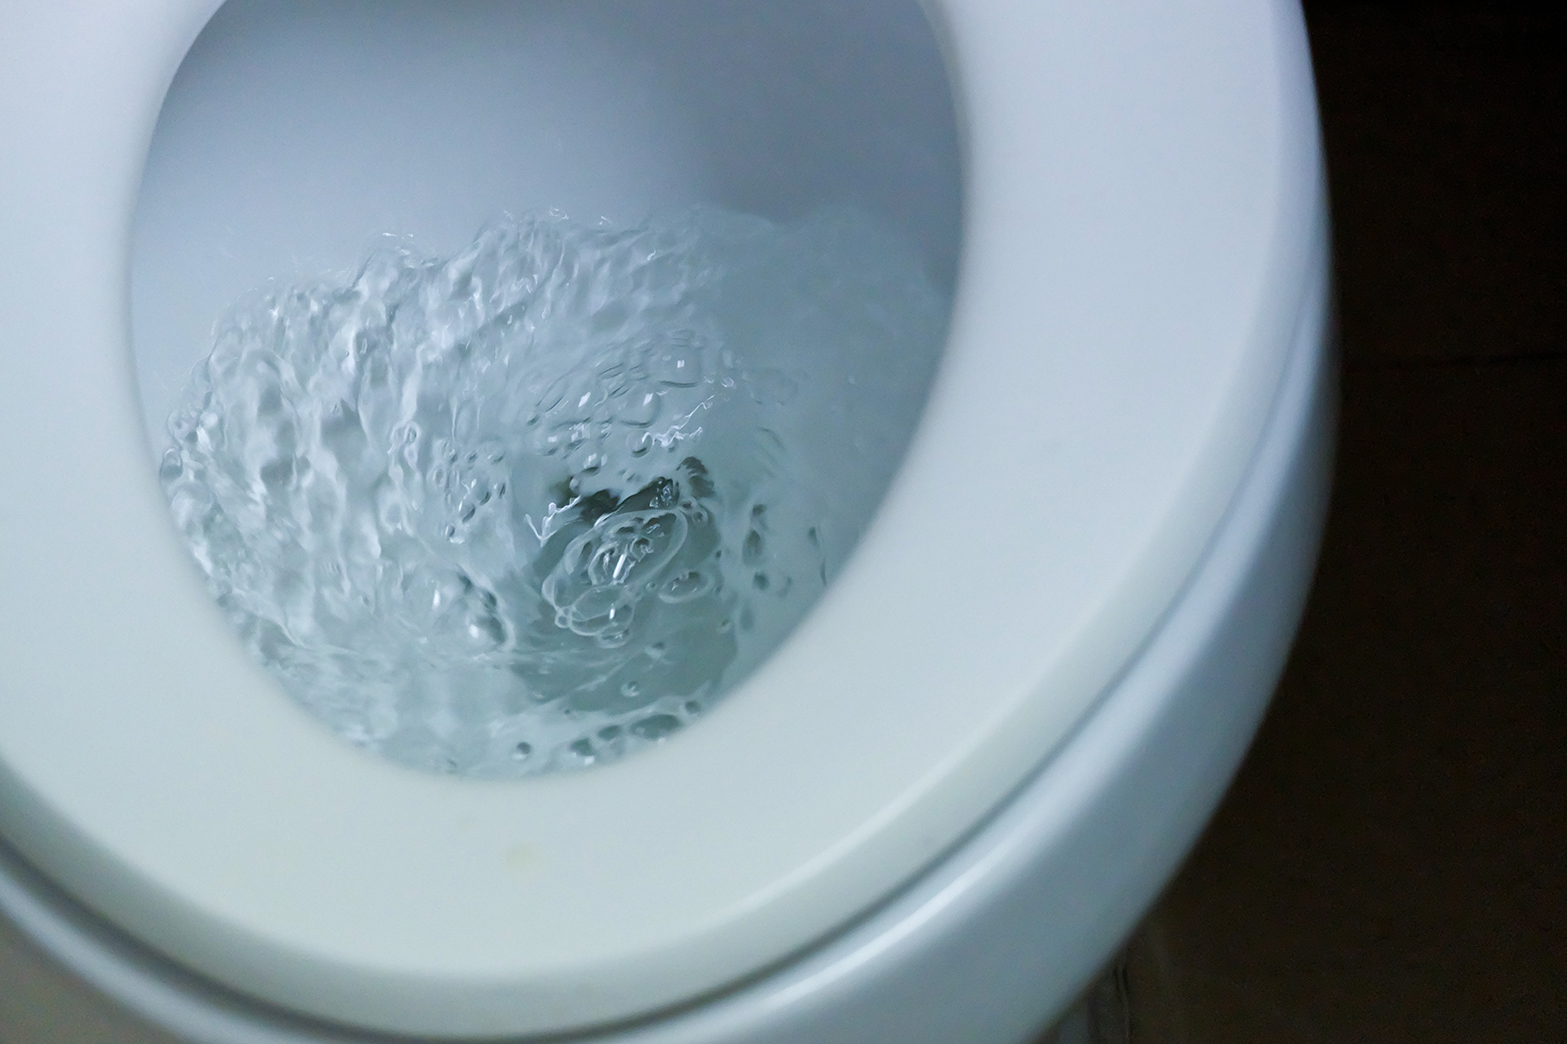 Réduire sa consommation d’eau dans les toilettes